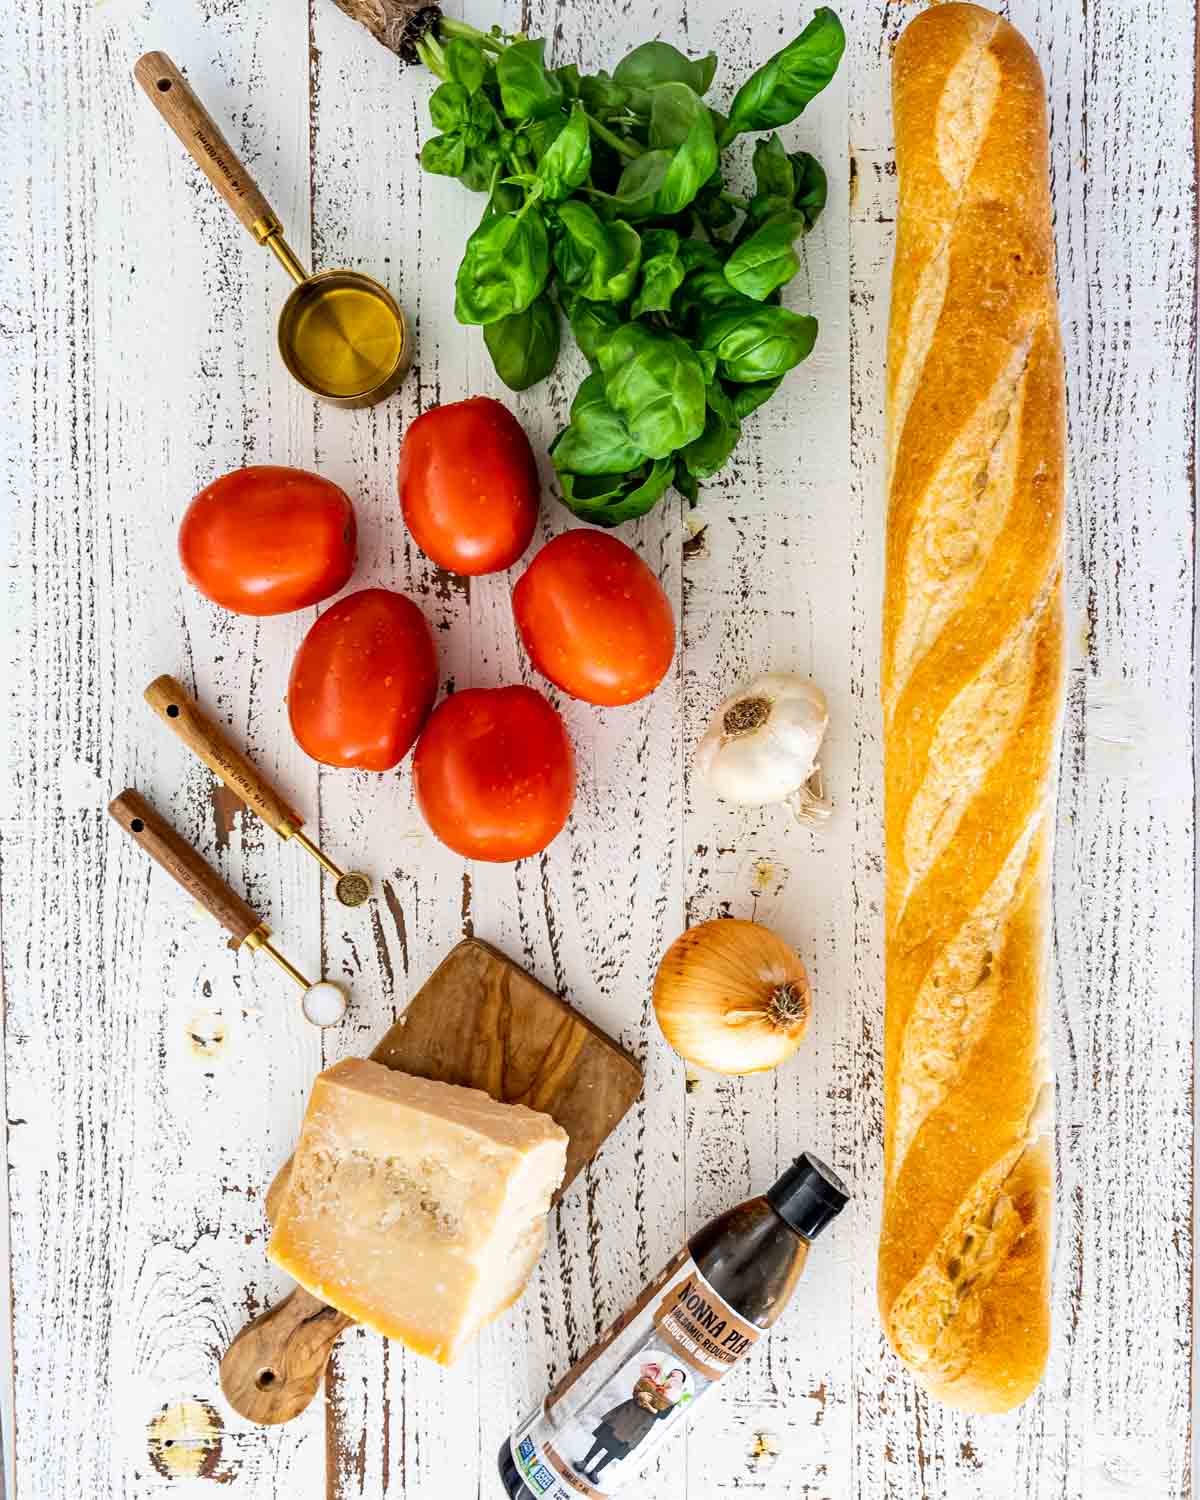 ingredients needed to make bruschetta.